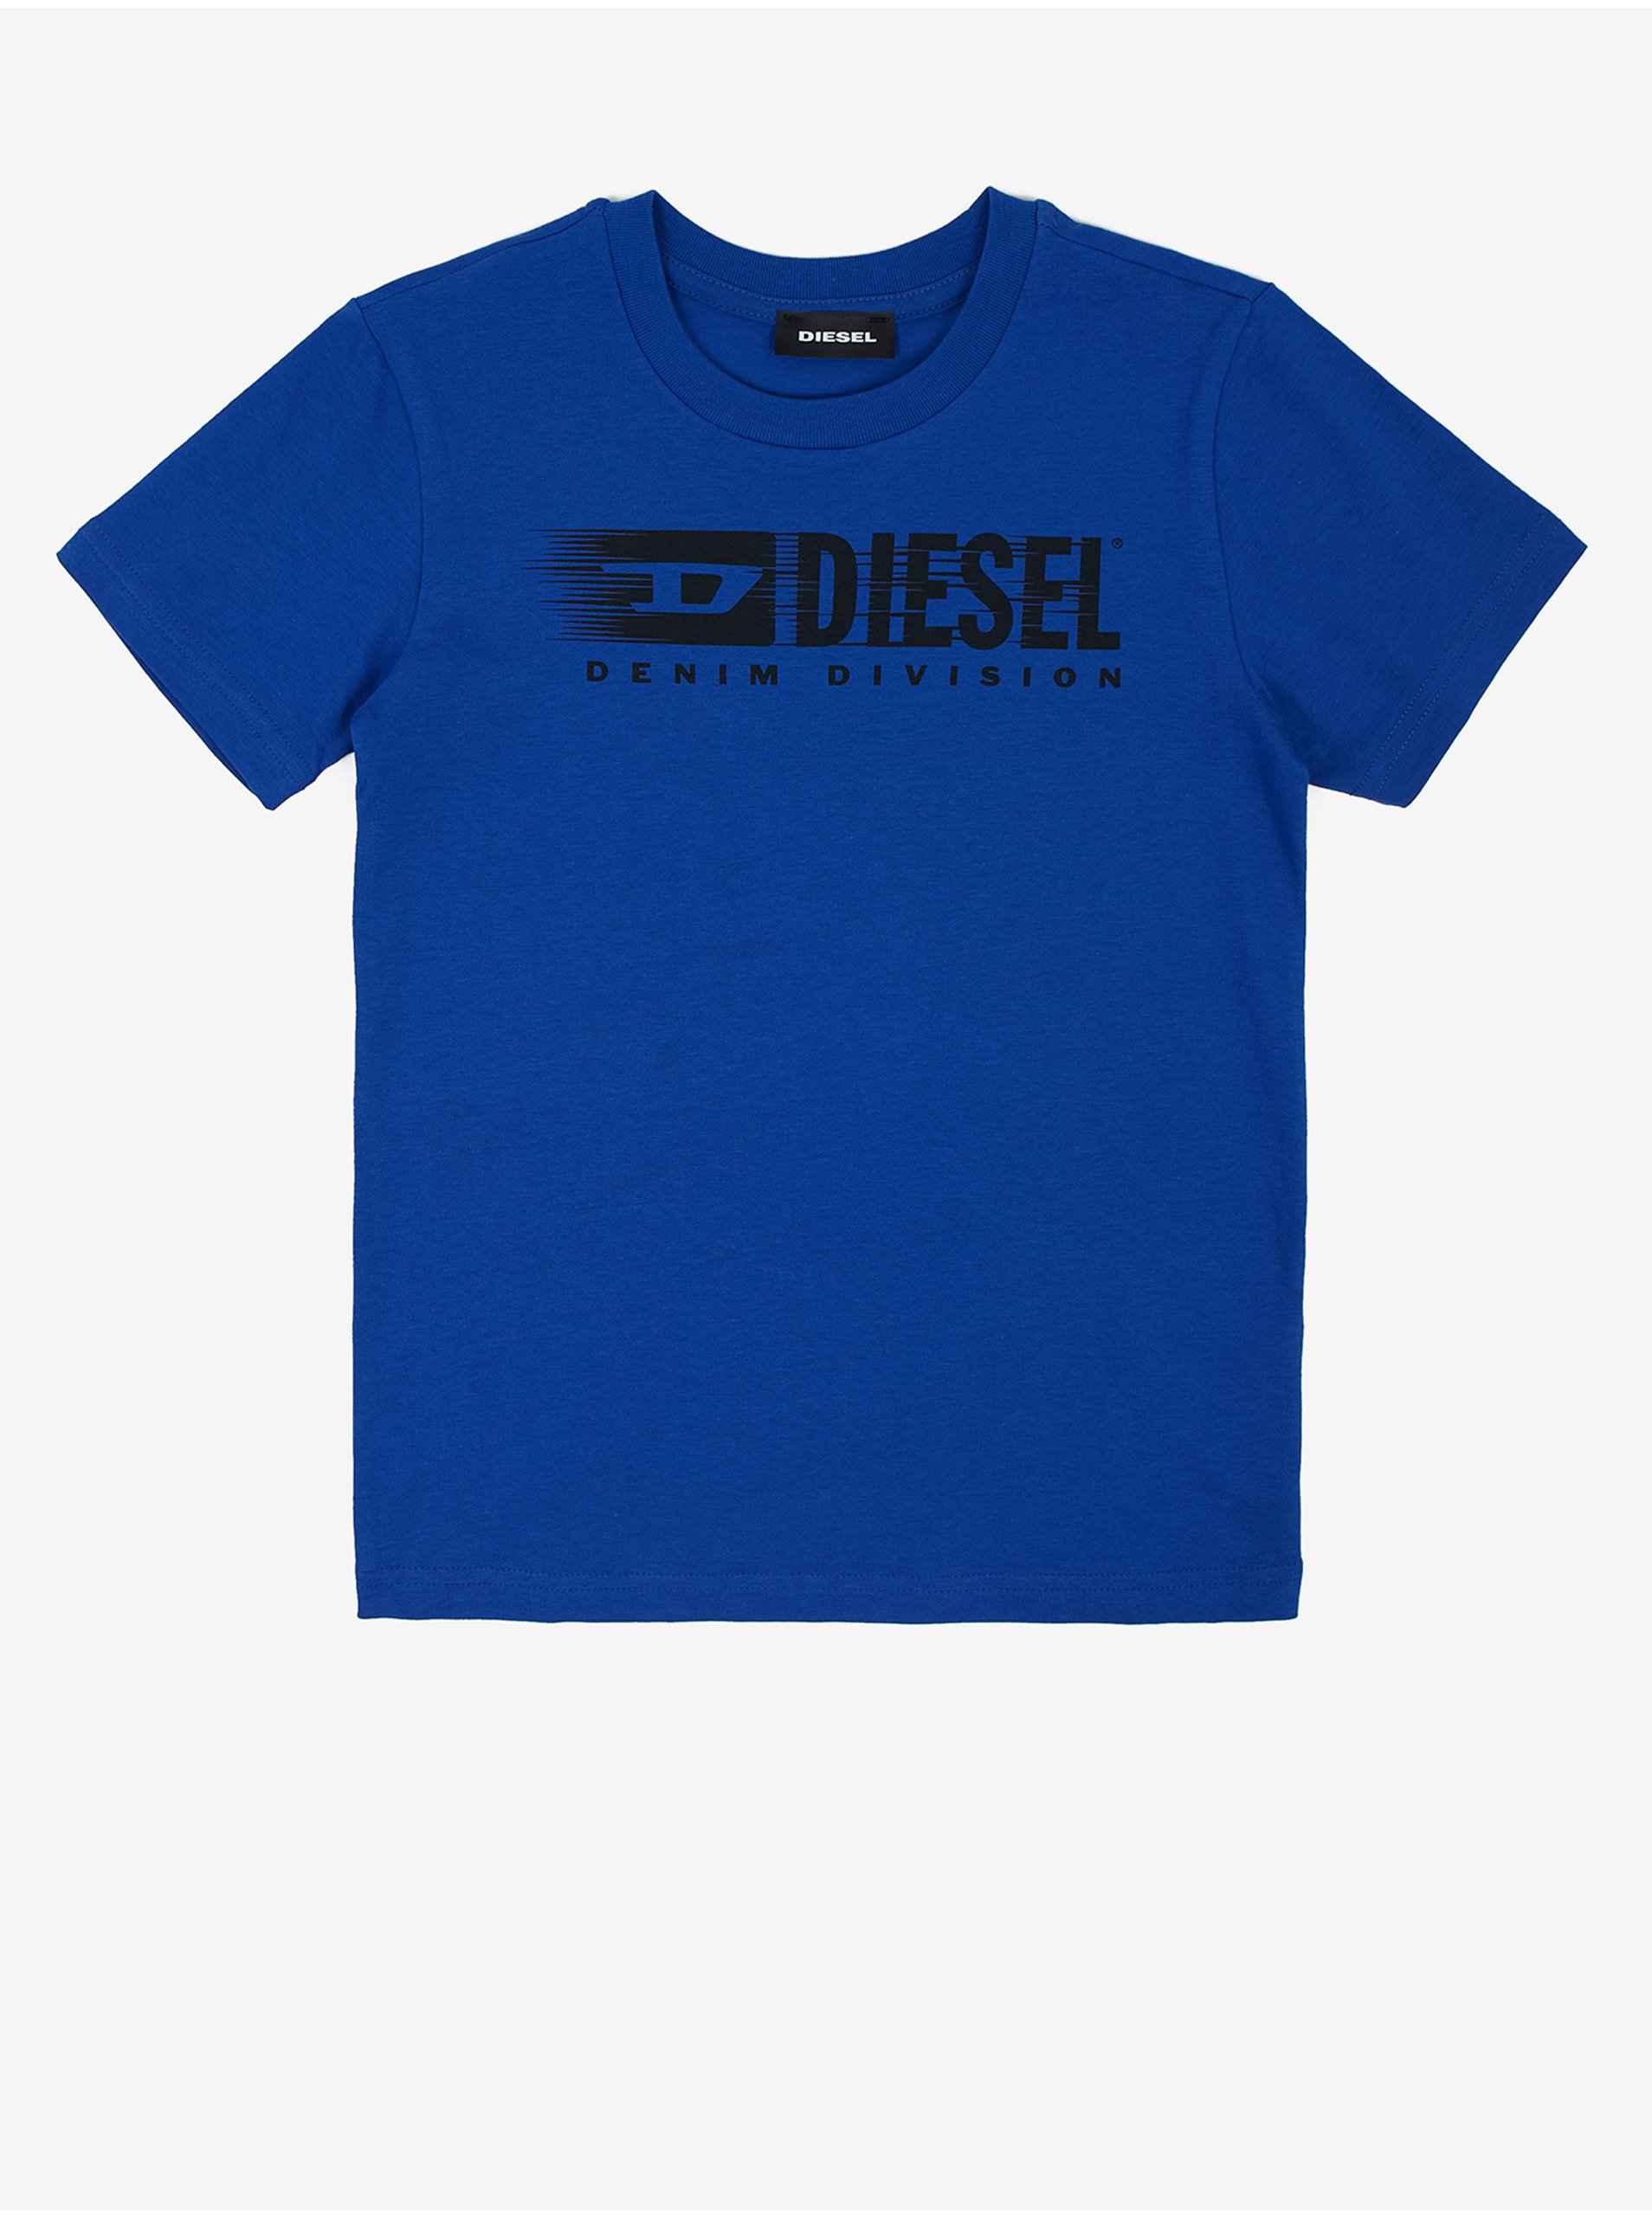 Lacno Diesel - tmavomodrá